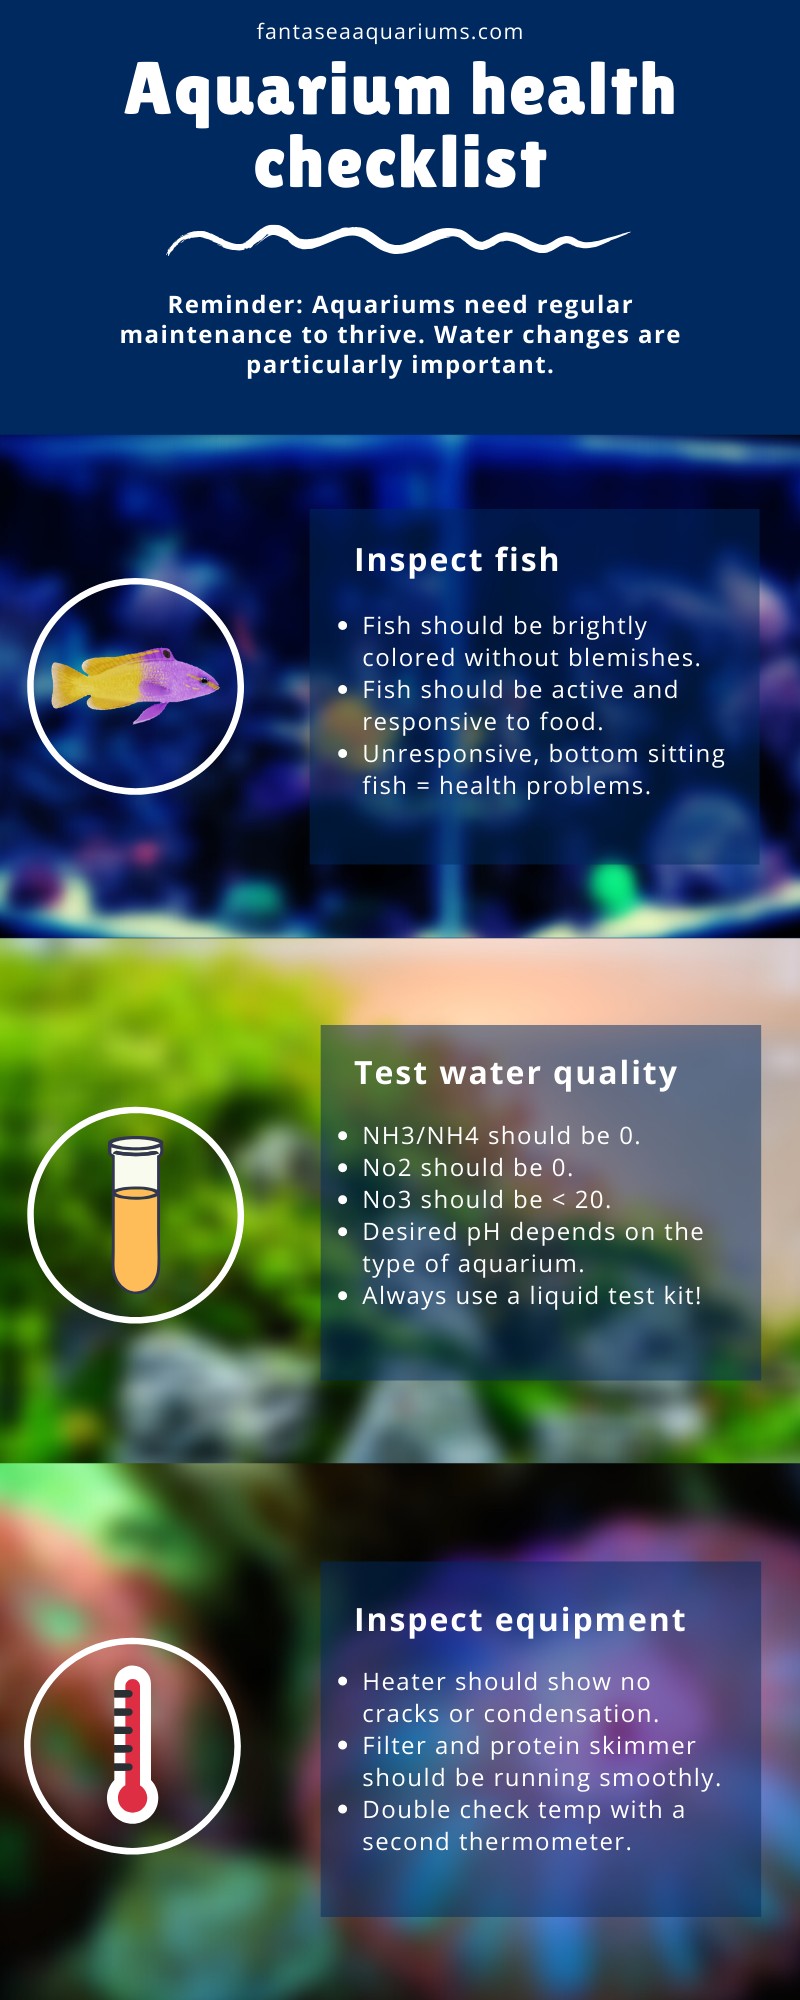 Aquarium health checklist